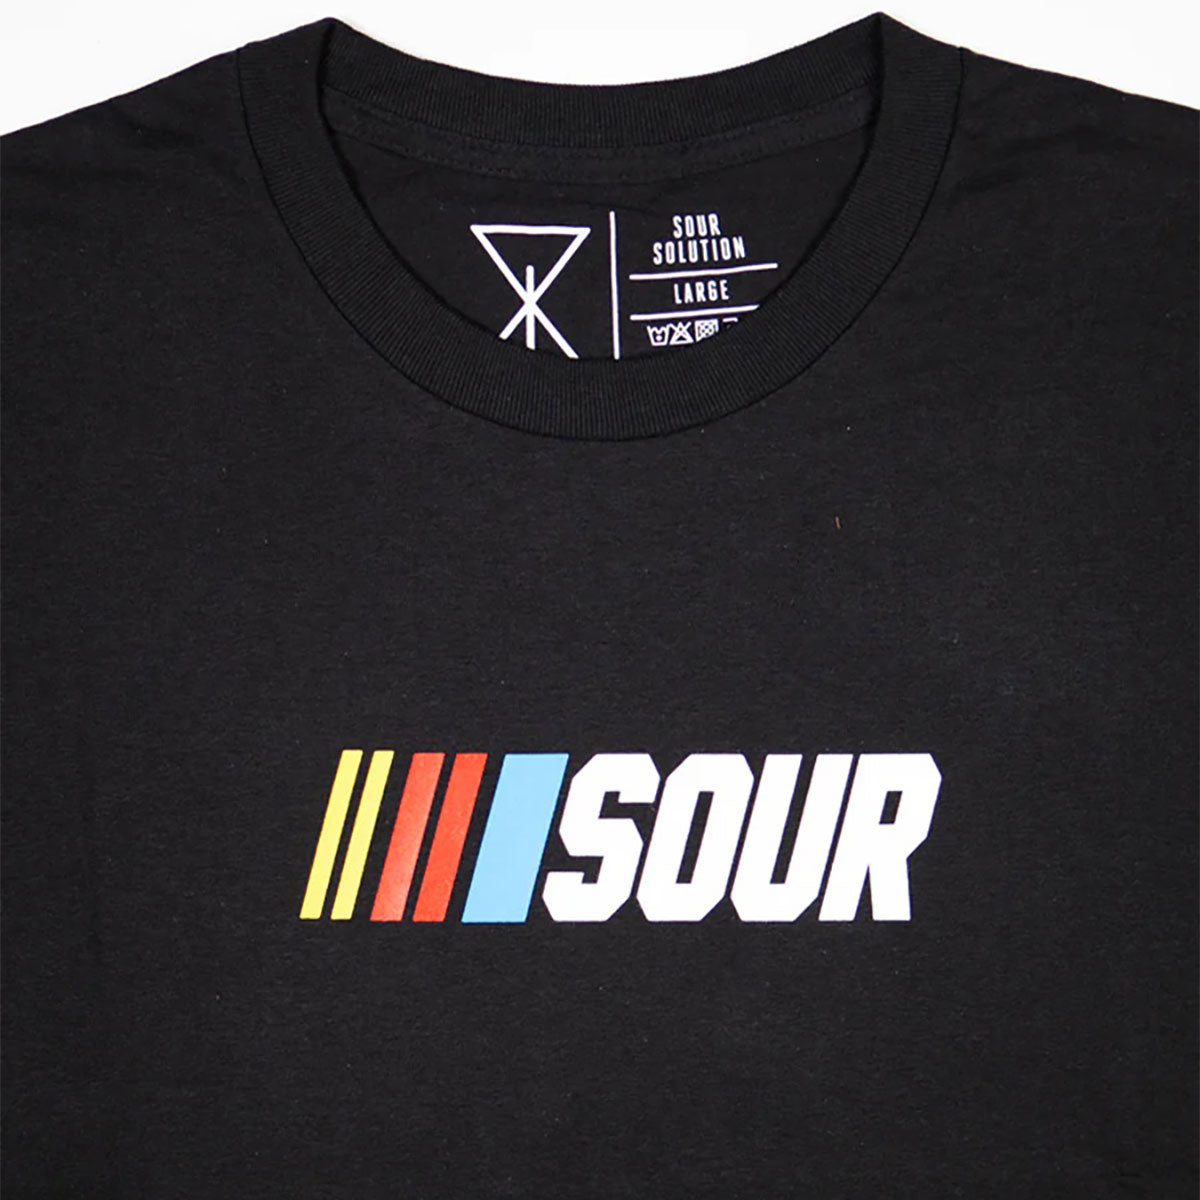 Sour Solution Sourcar T-Shirt - Black image 2